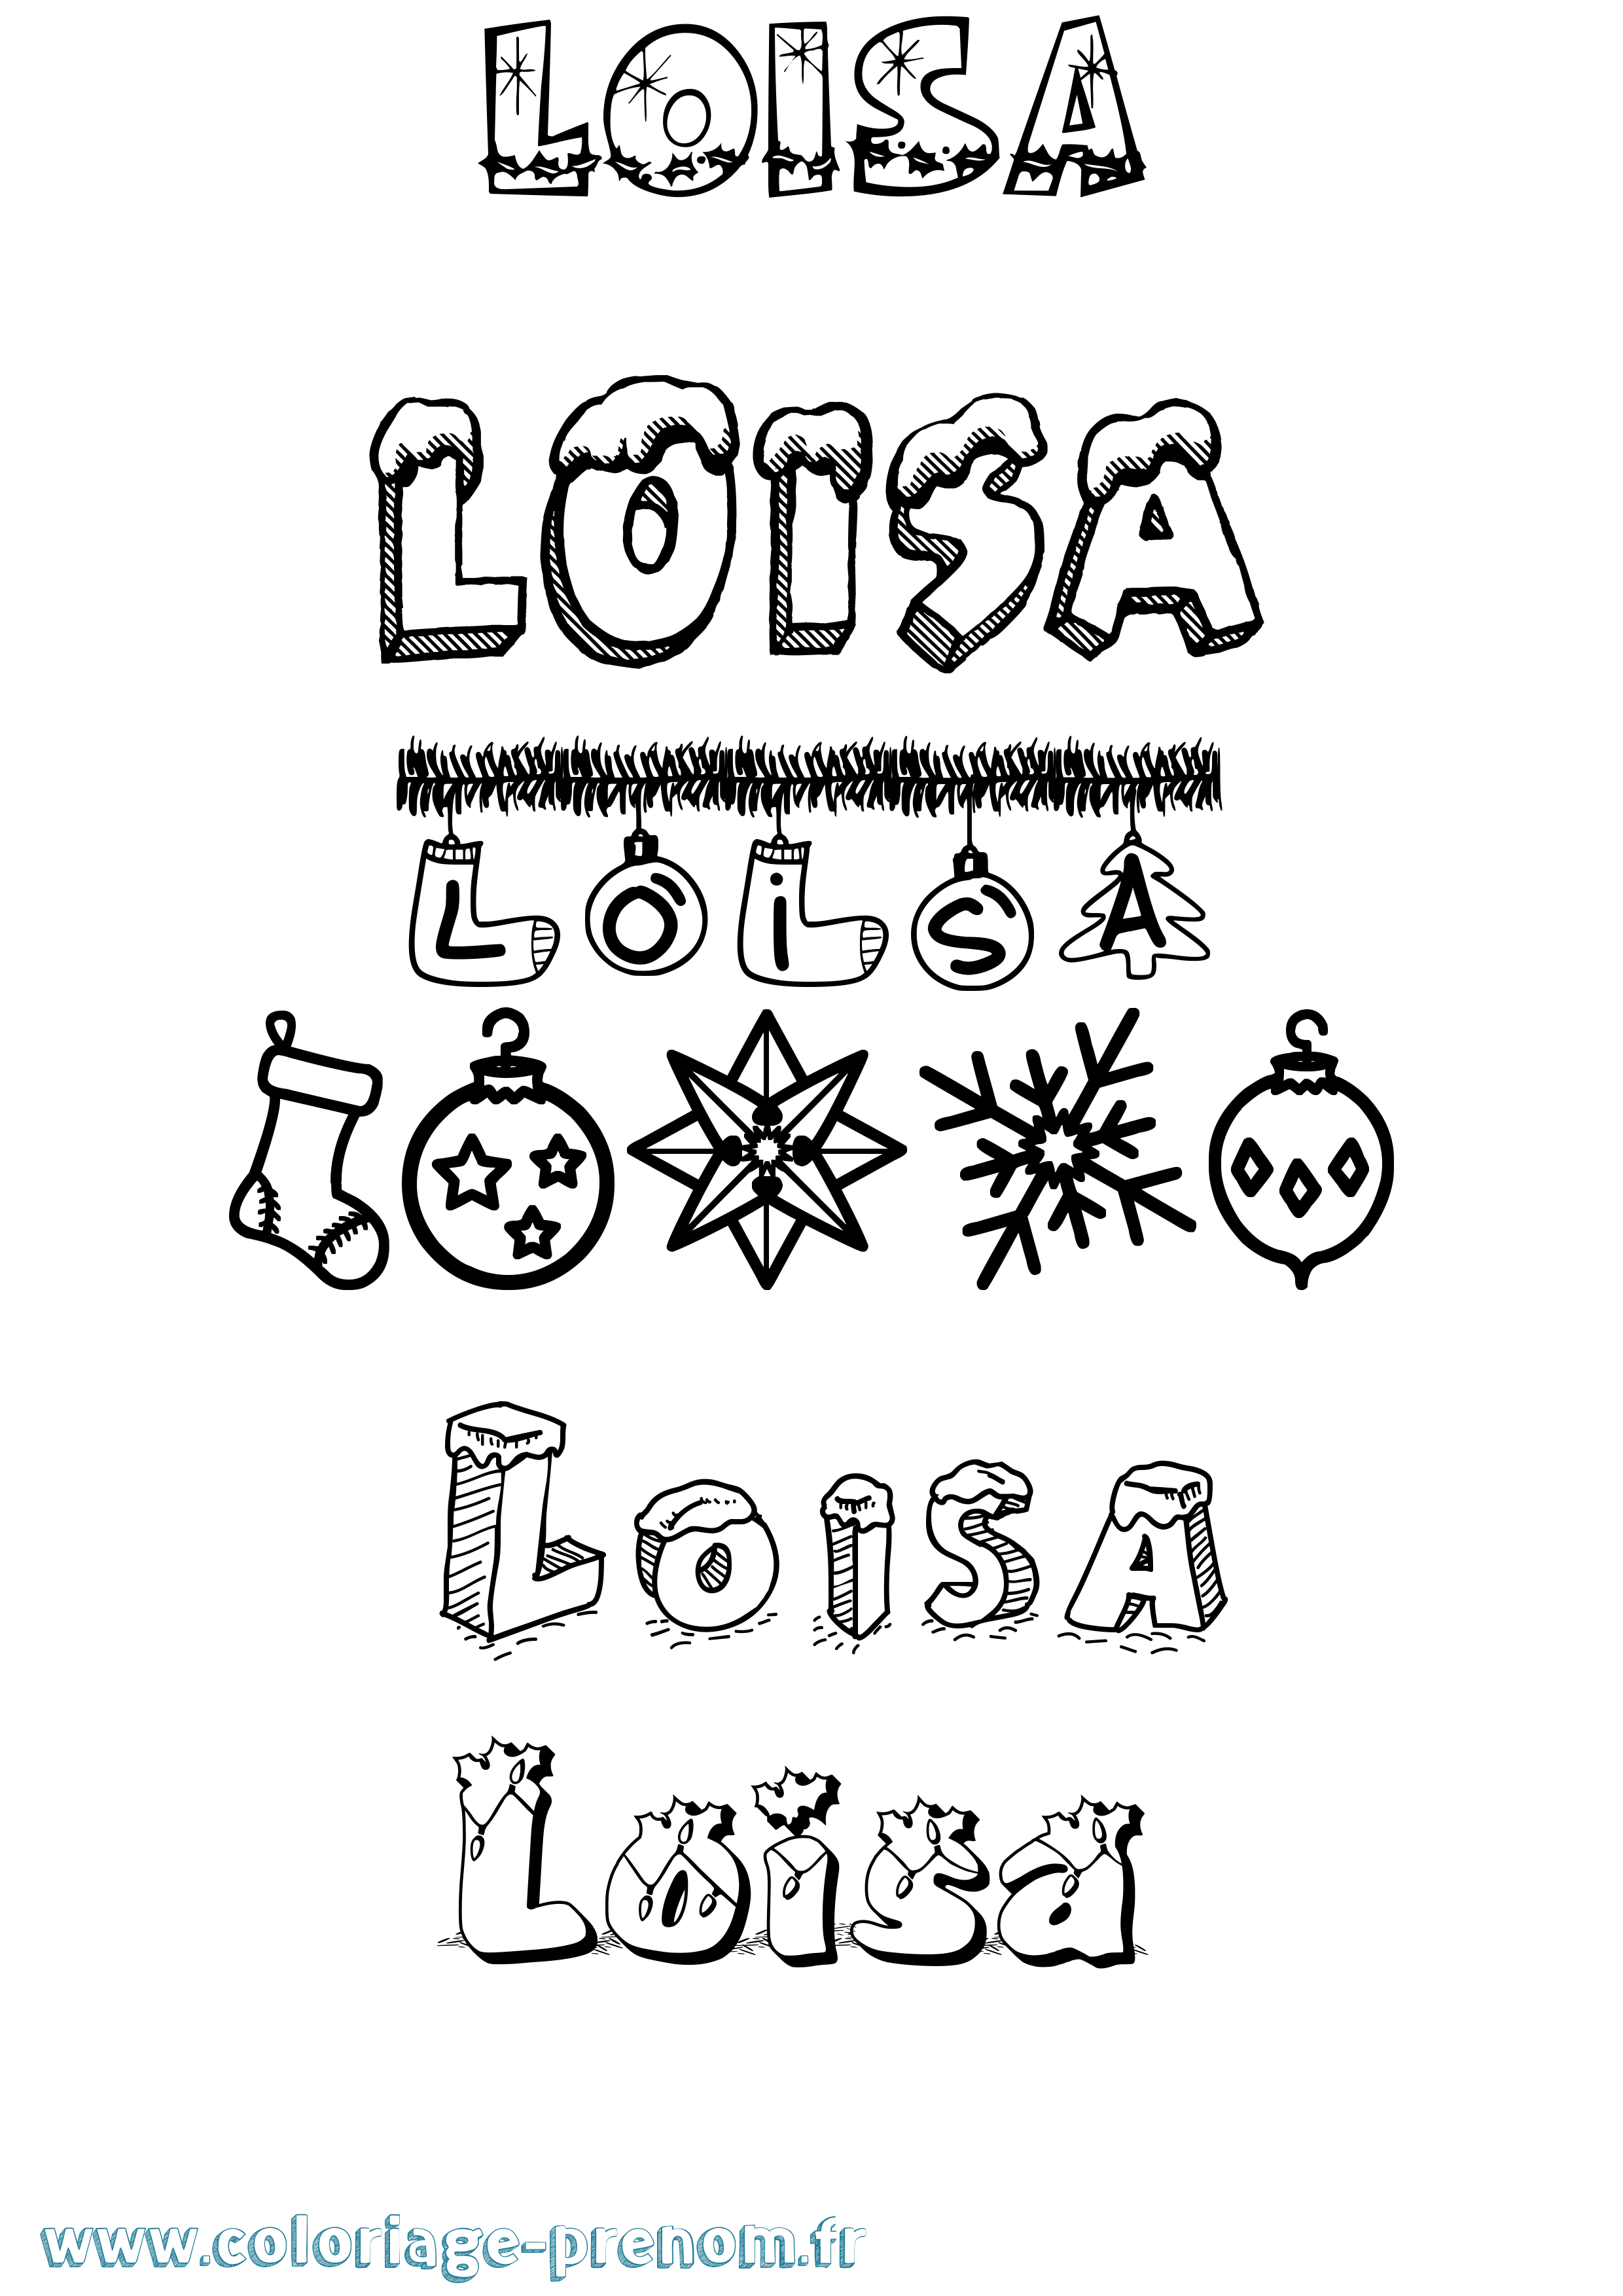 Coloriage prénom Loisa Noël